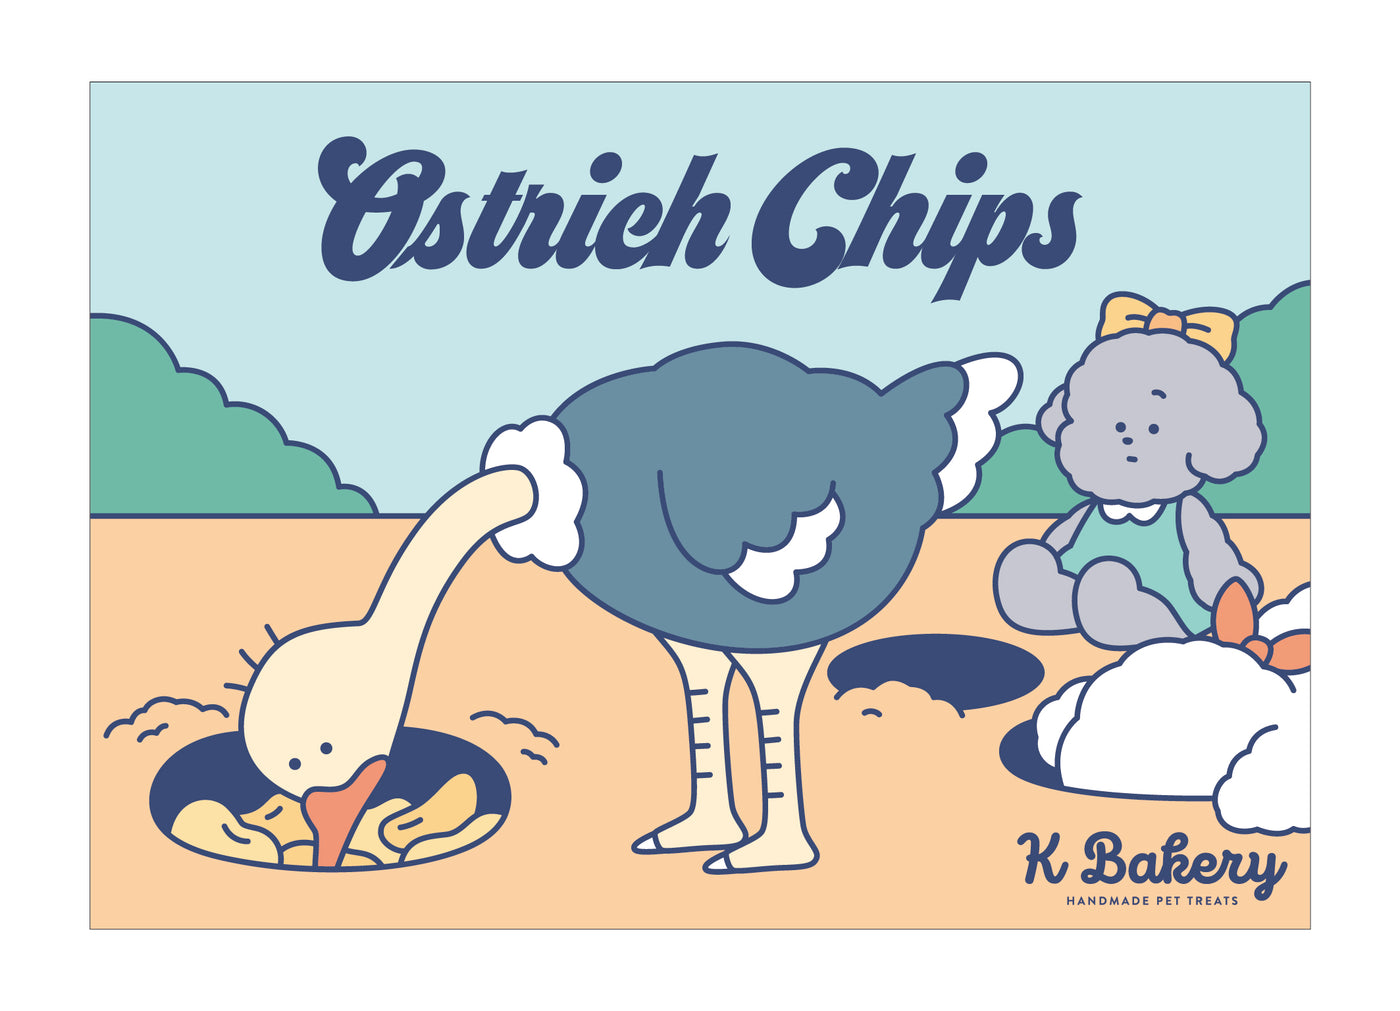 Ostrich Chips